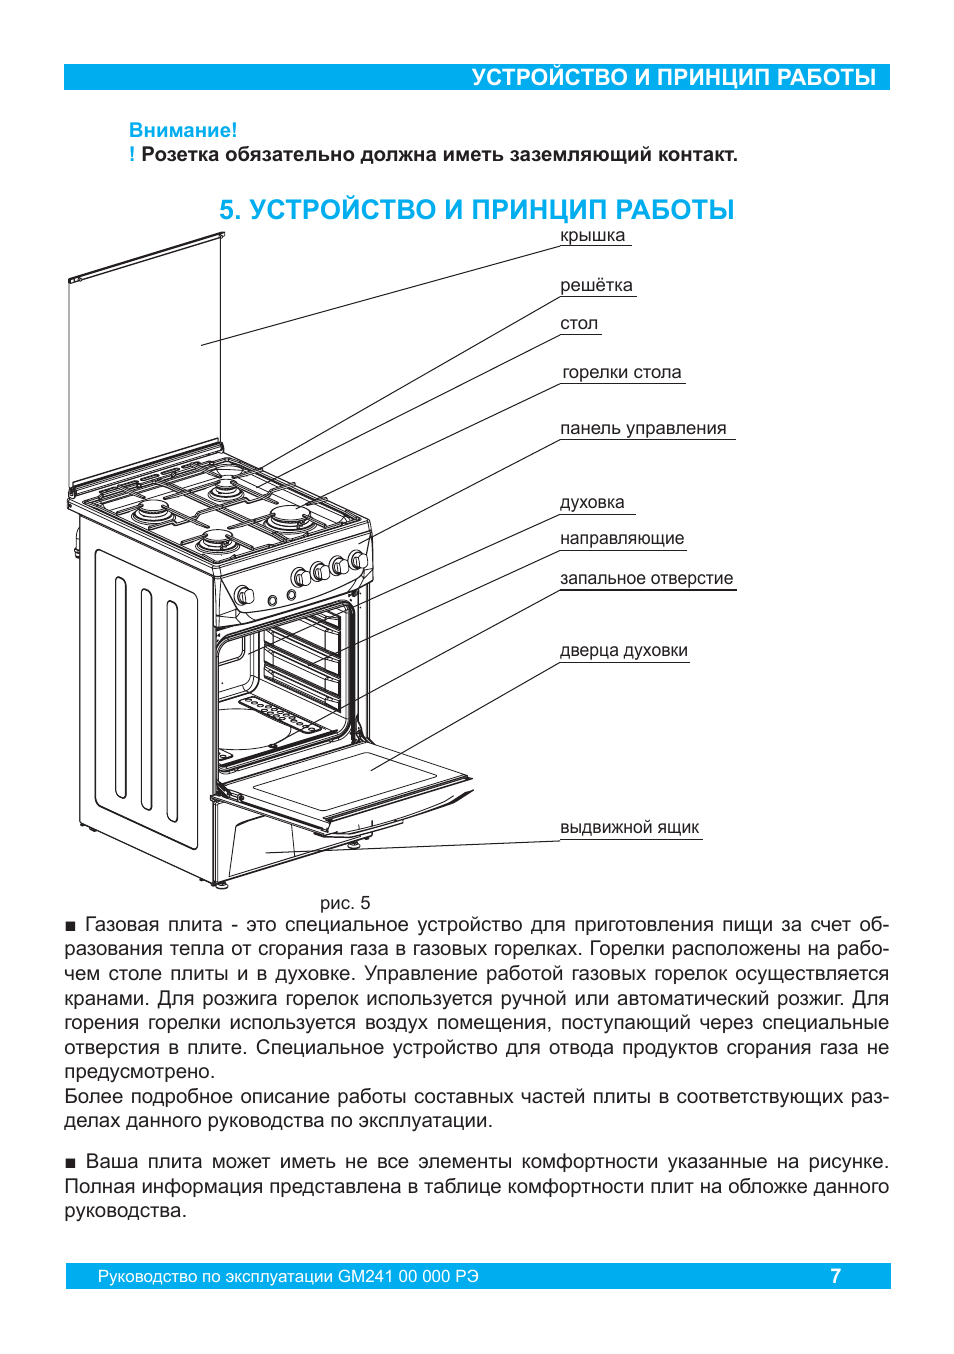 Схема газовой плиты - основные компоненты